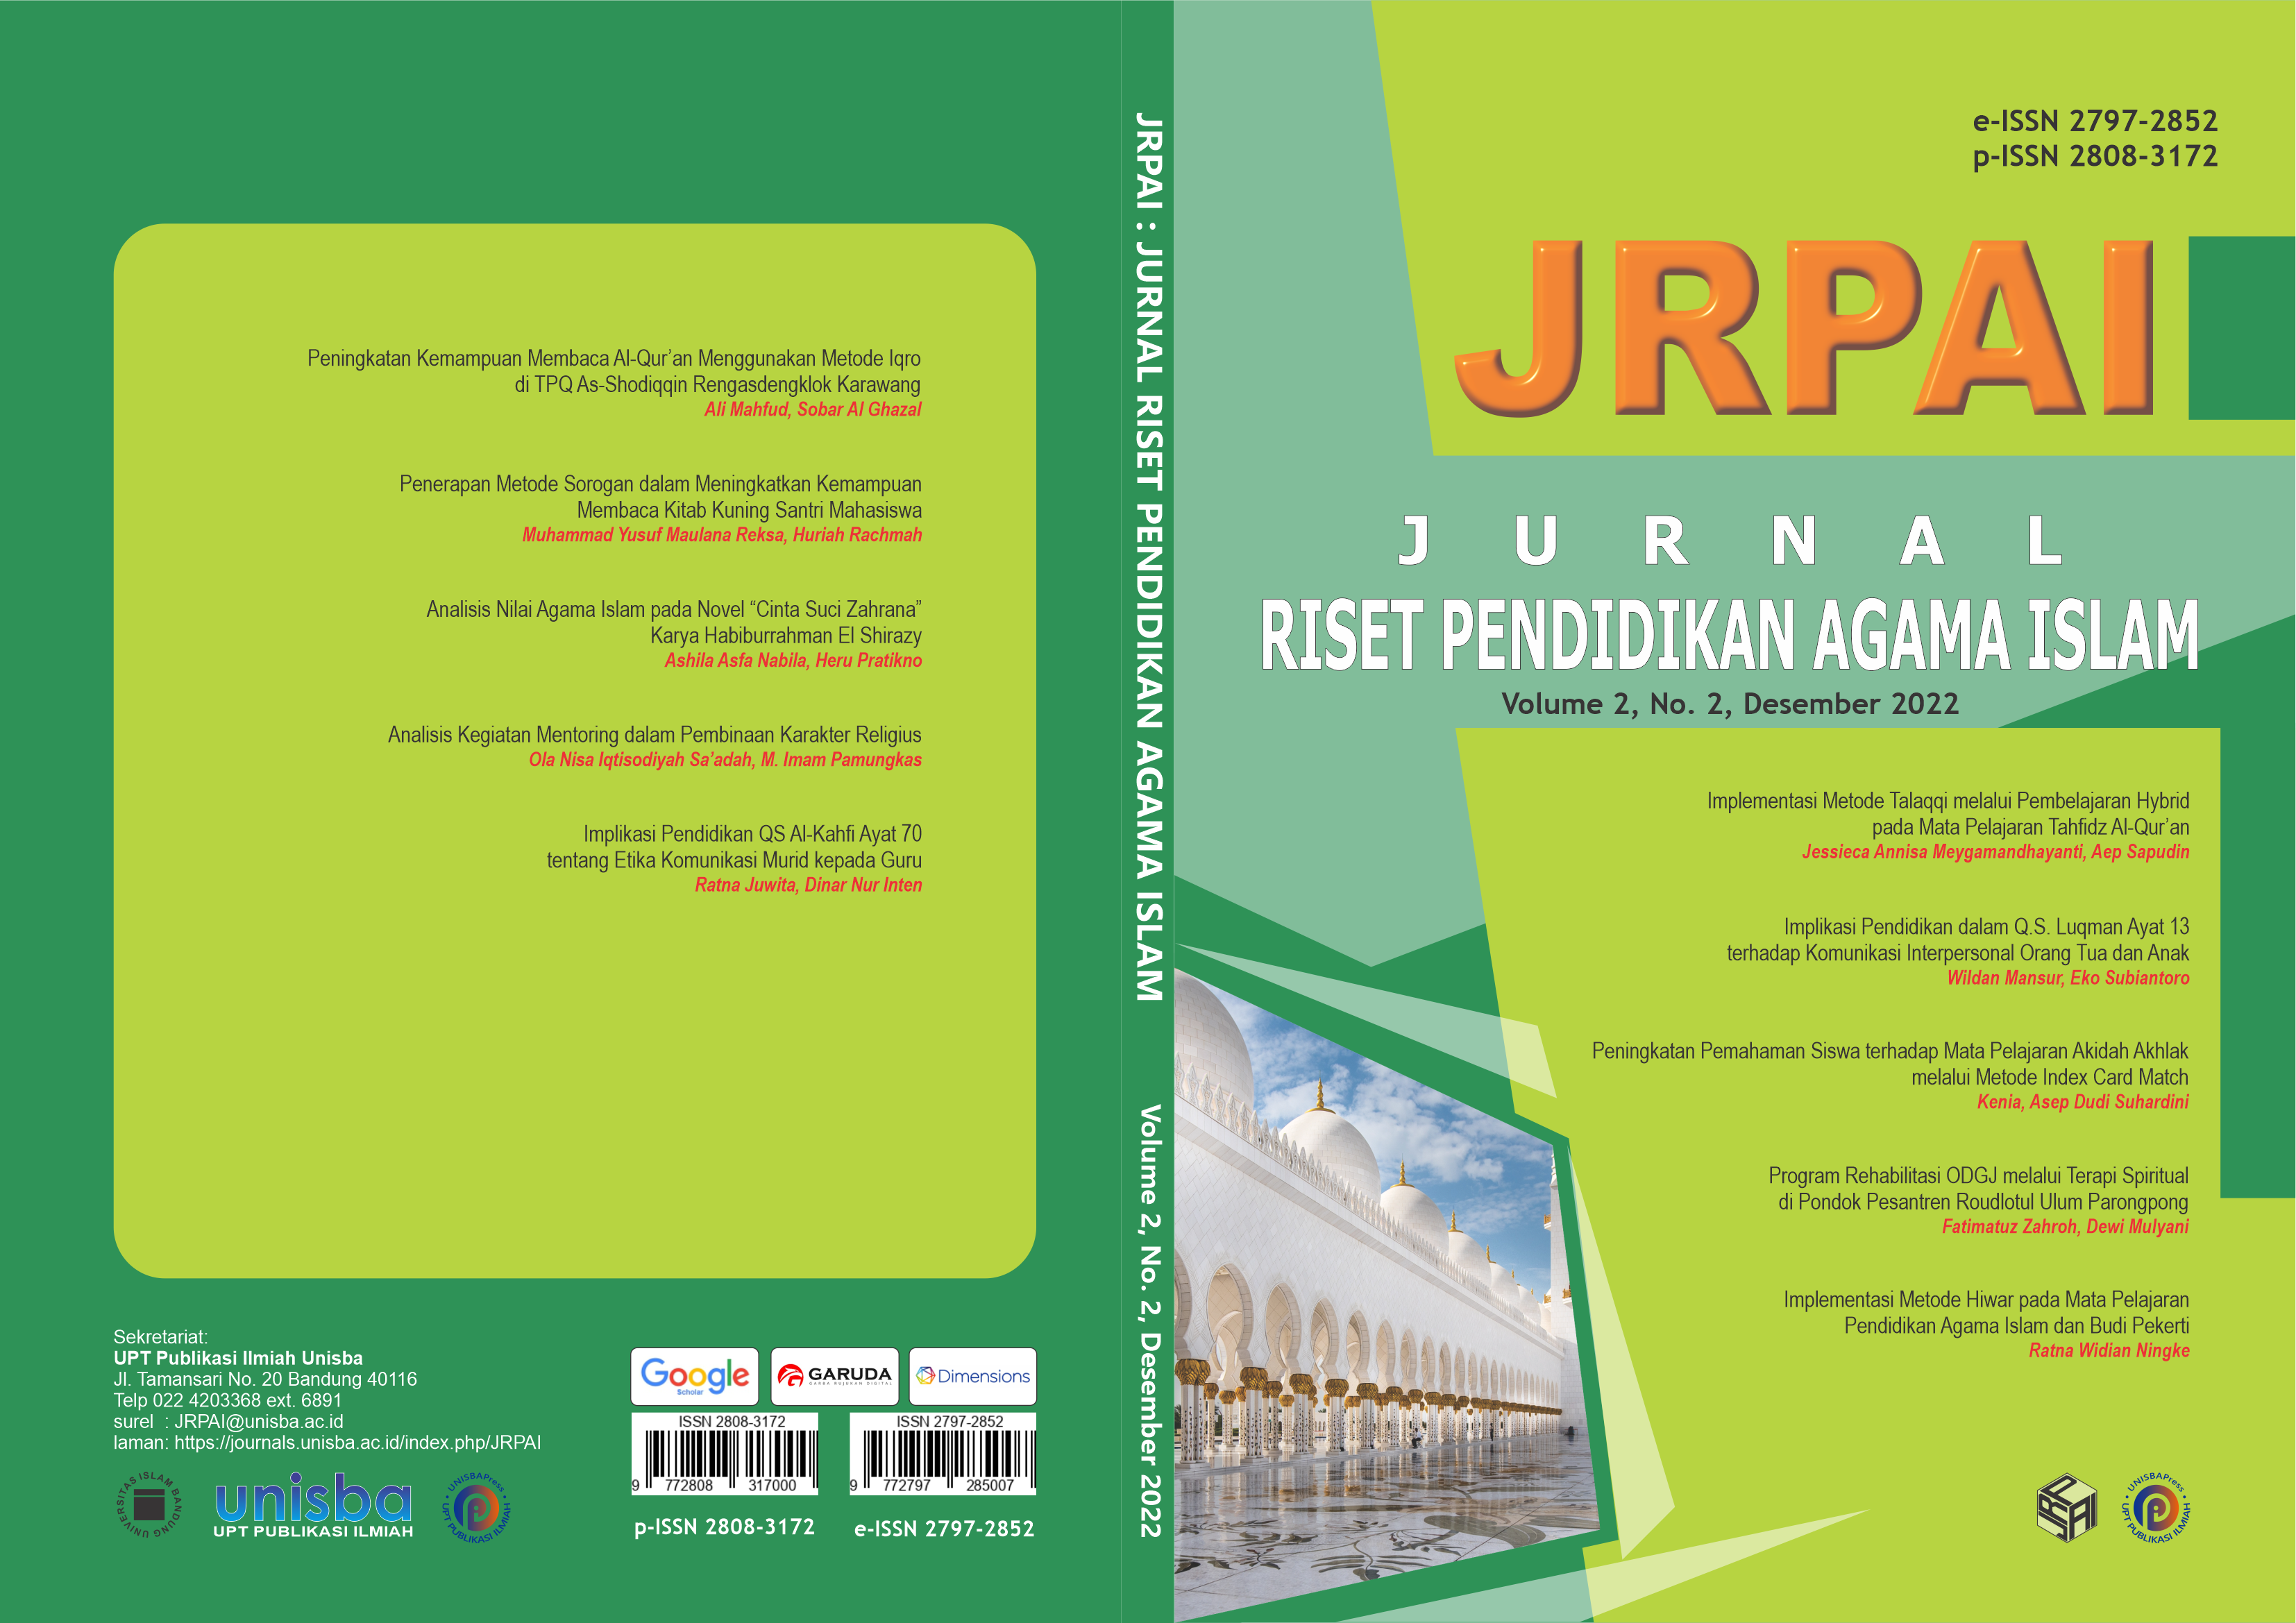 					View Volume 2, No. 2, Desember 2022, Jurnal Riset Pendidikan Agama Islam (JRPAI)
				